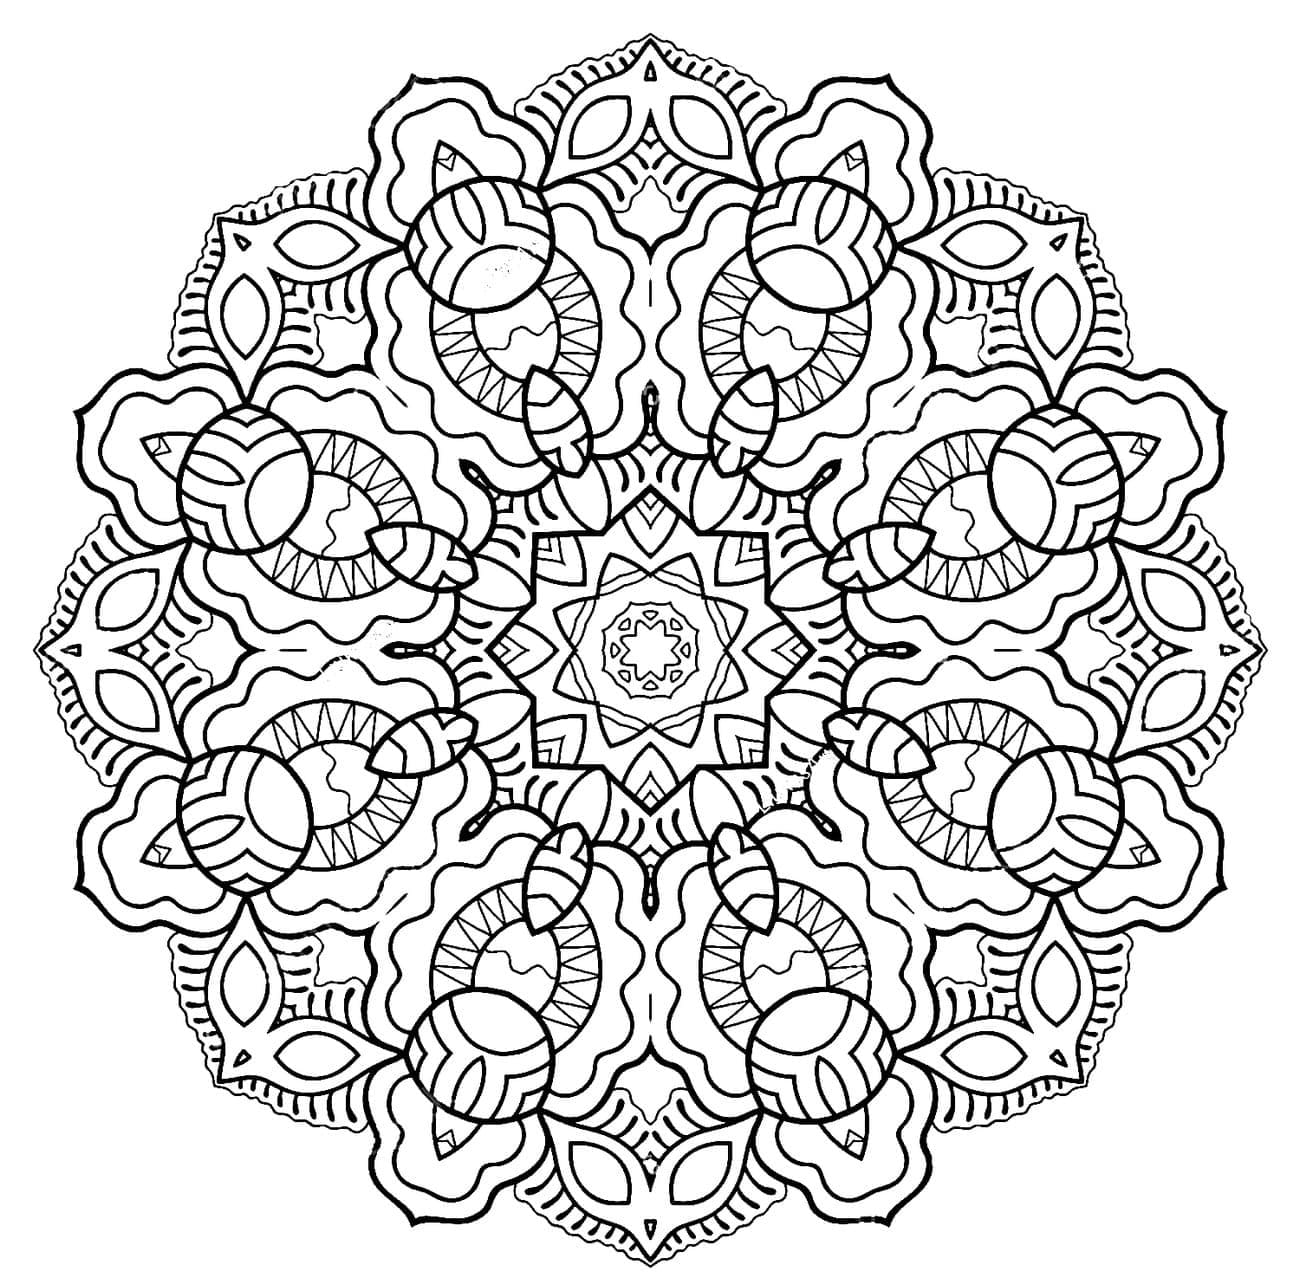 Mandala de Flocon de Neige coloring page